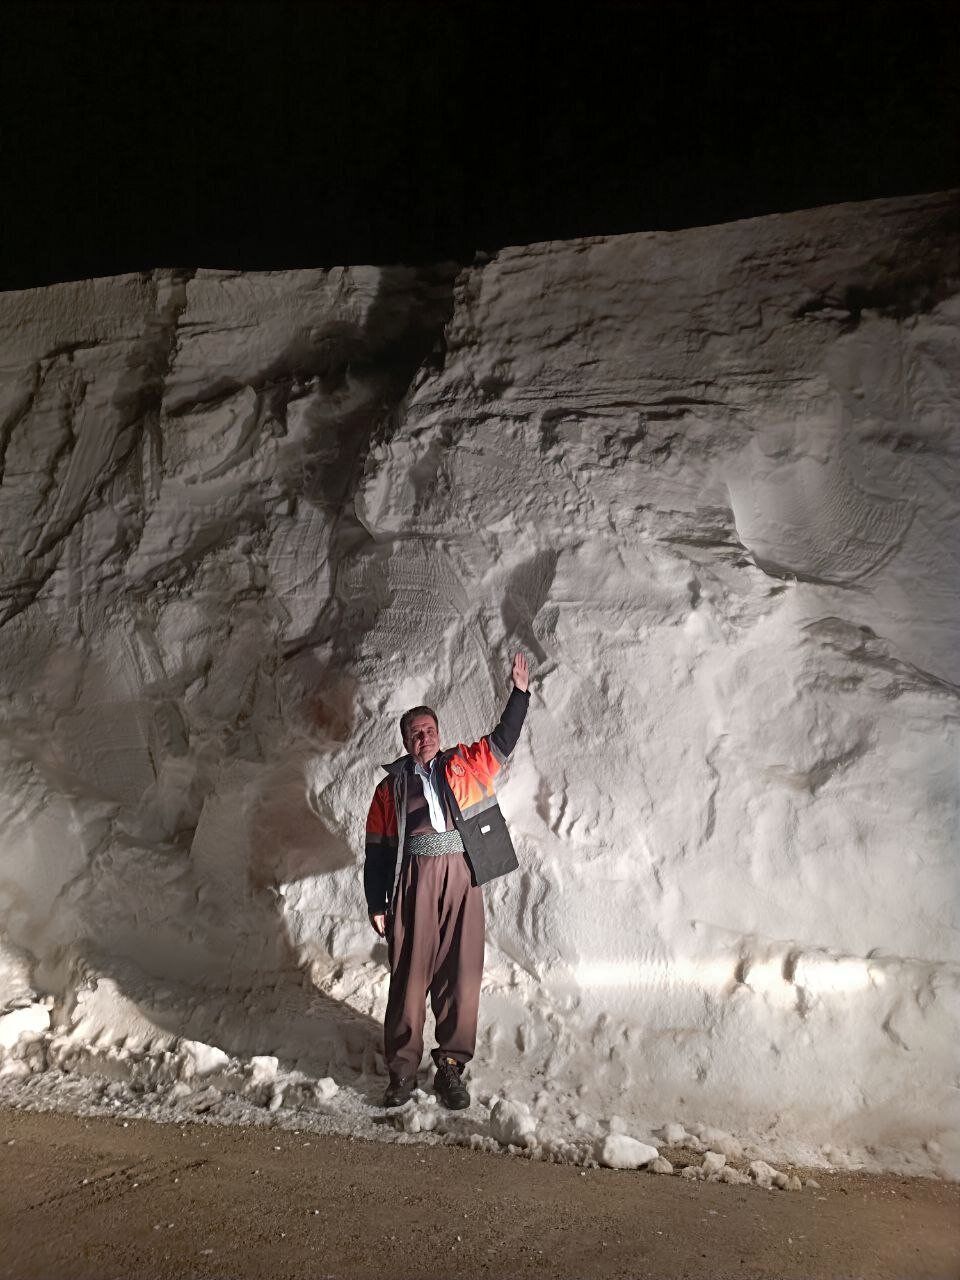 برف ۴ متری در این استان خبرساز شد + عکس